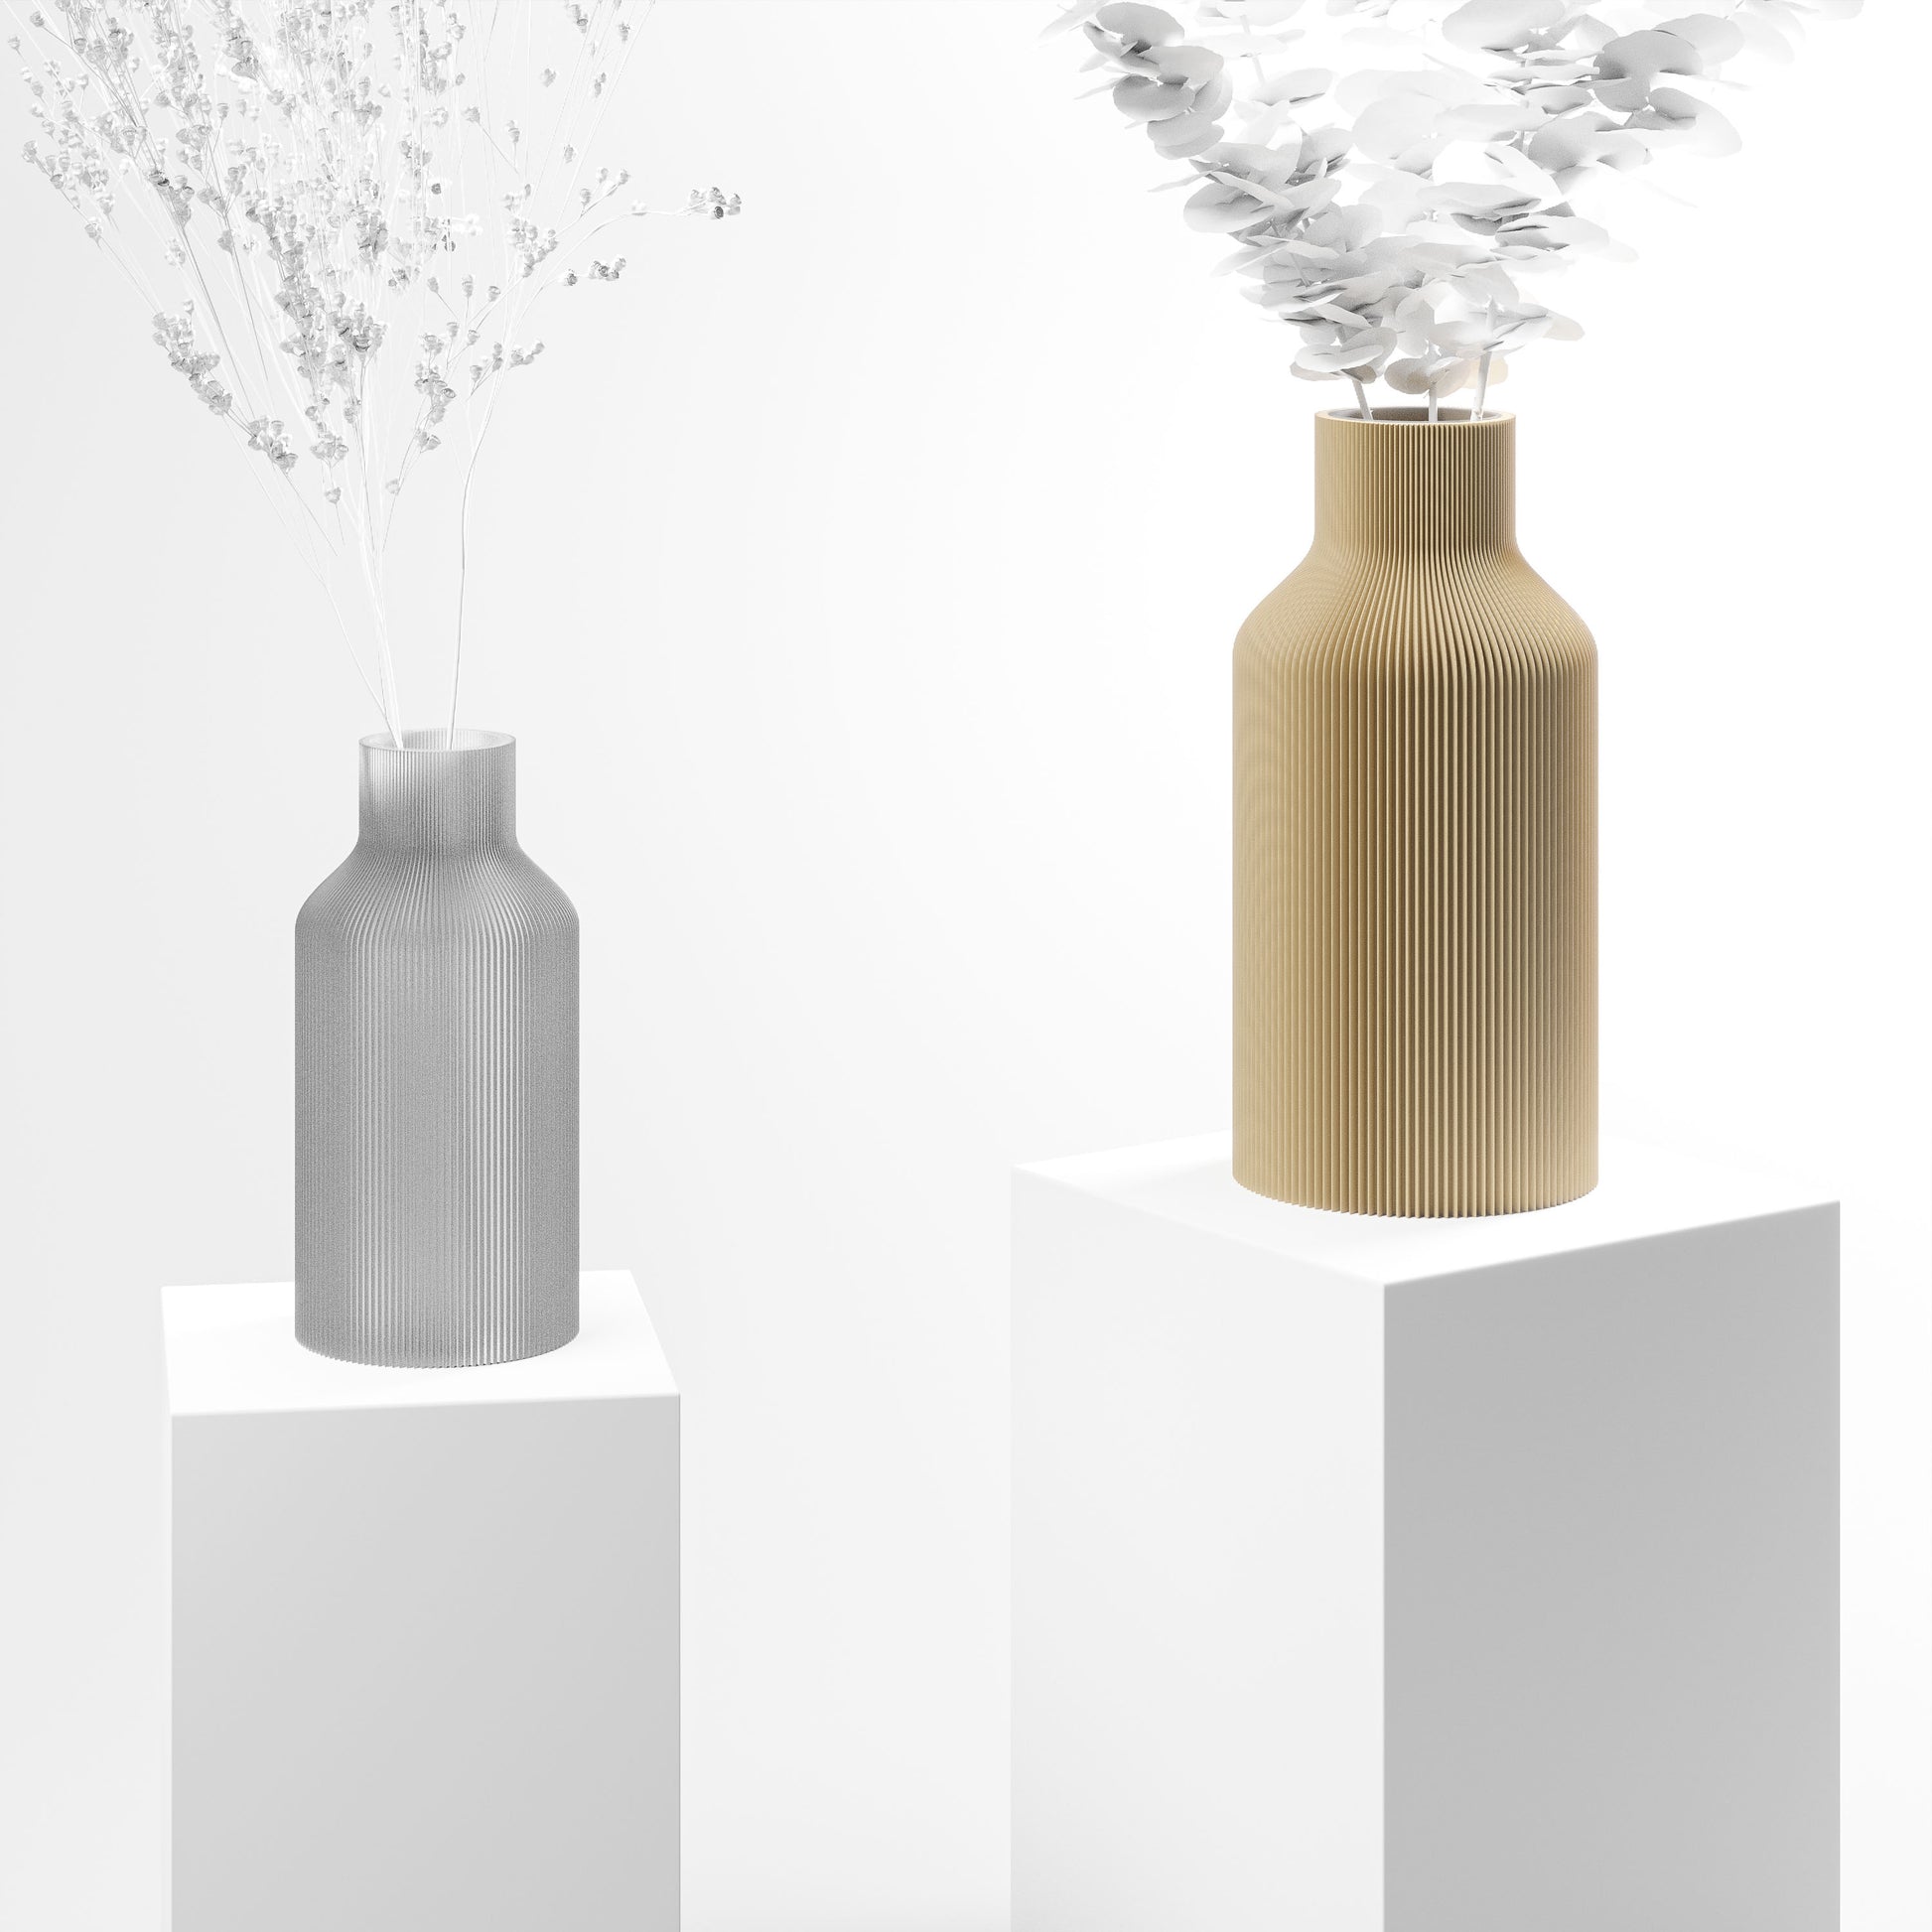 Stylische 3D Druck Vase mit feinen Rillen | 100% recyclebar | Form: Flasche | Farbe: beige matt groß 